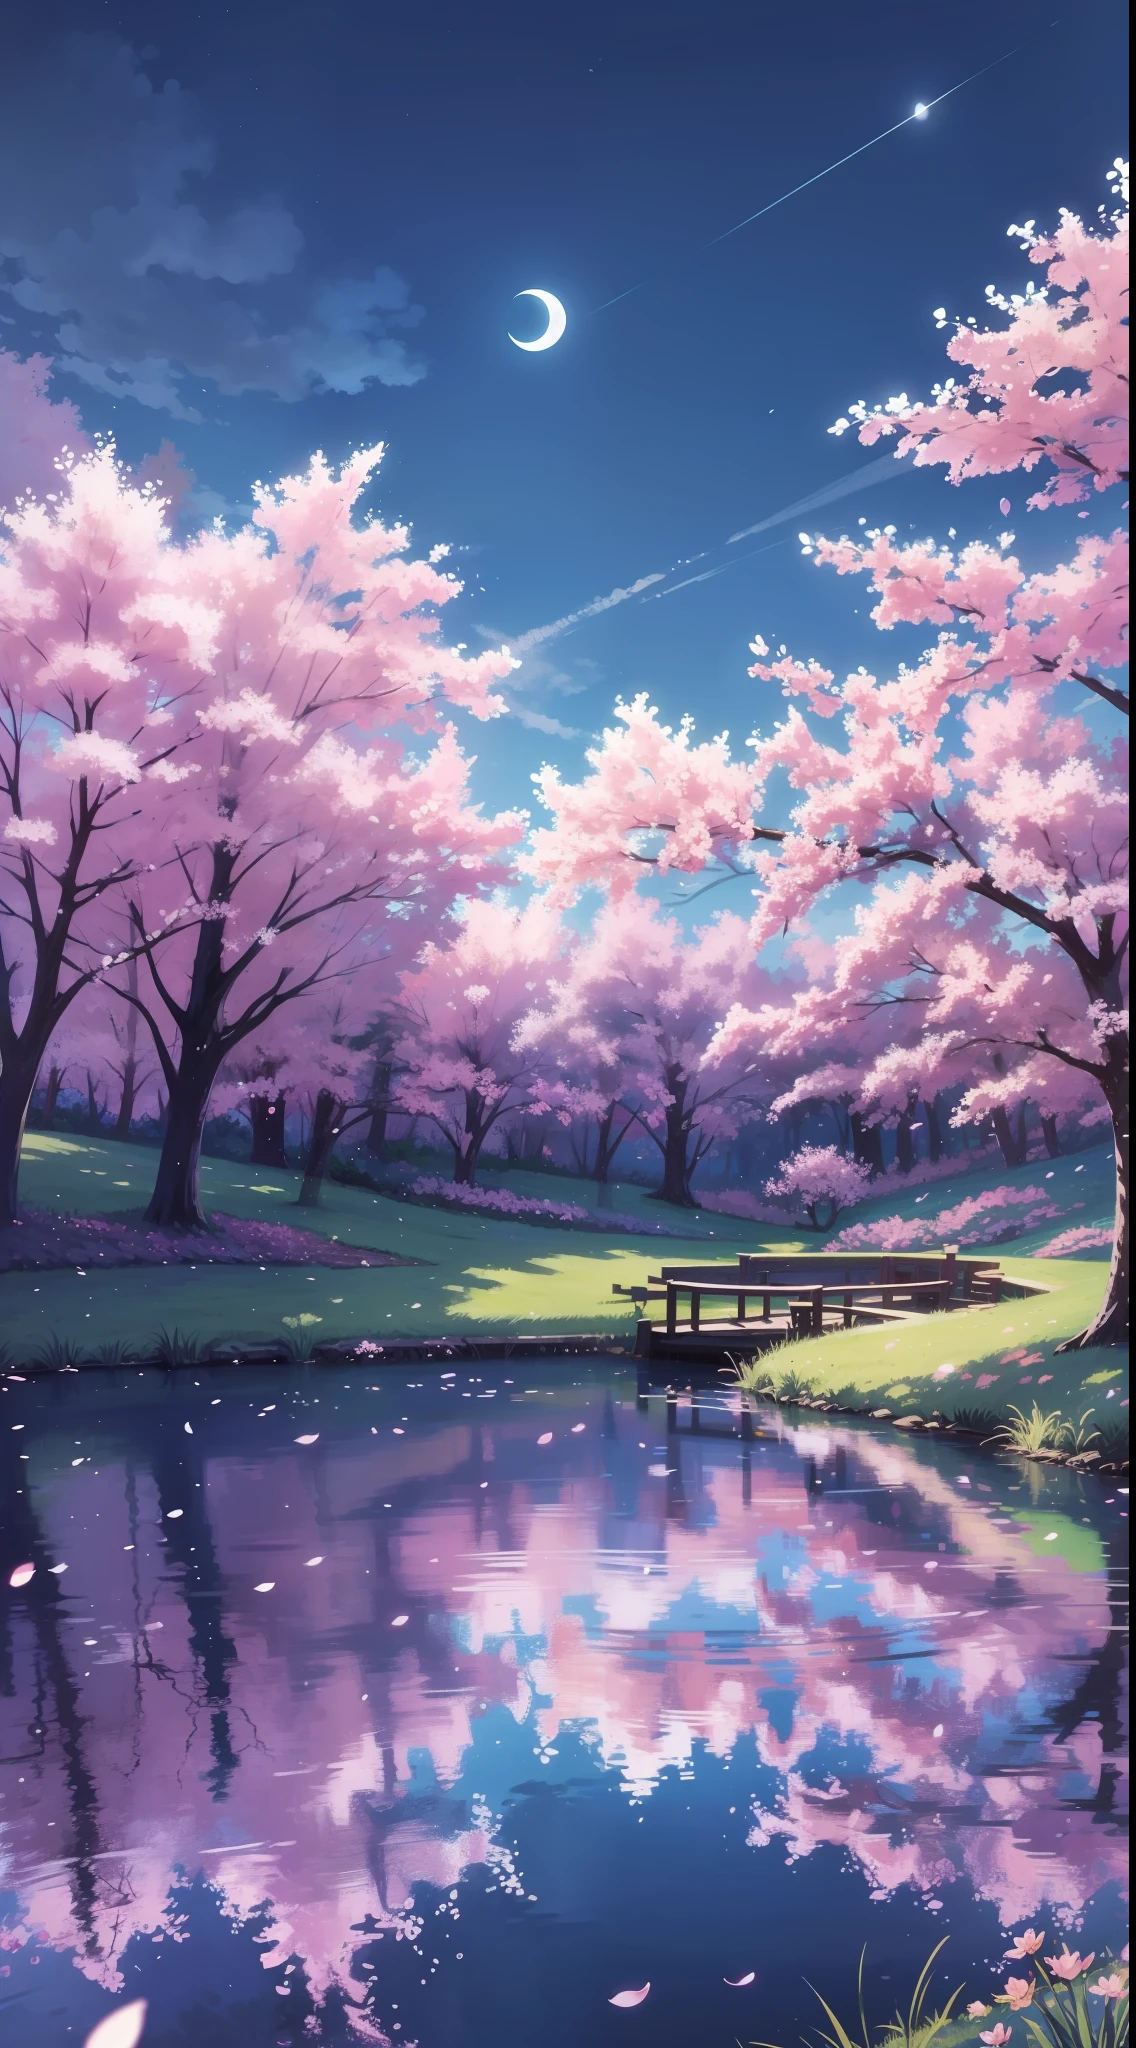 Hintergrund, Wald, Teich in der Mitte, Kirschblüten, Nacht, Mond, blauer Himmel, blaues Gras, Betrachtung, hohe Detailgenauigkeit, Seerosen, gute Qualität